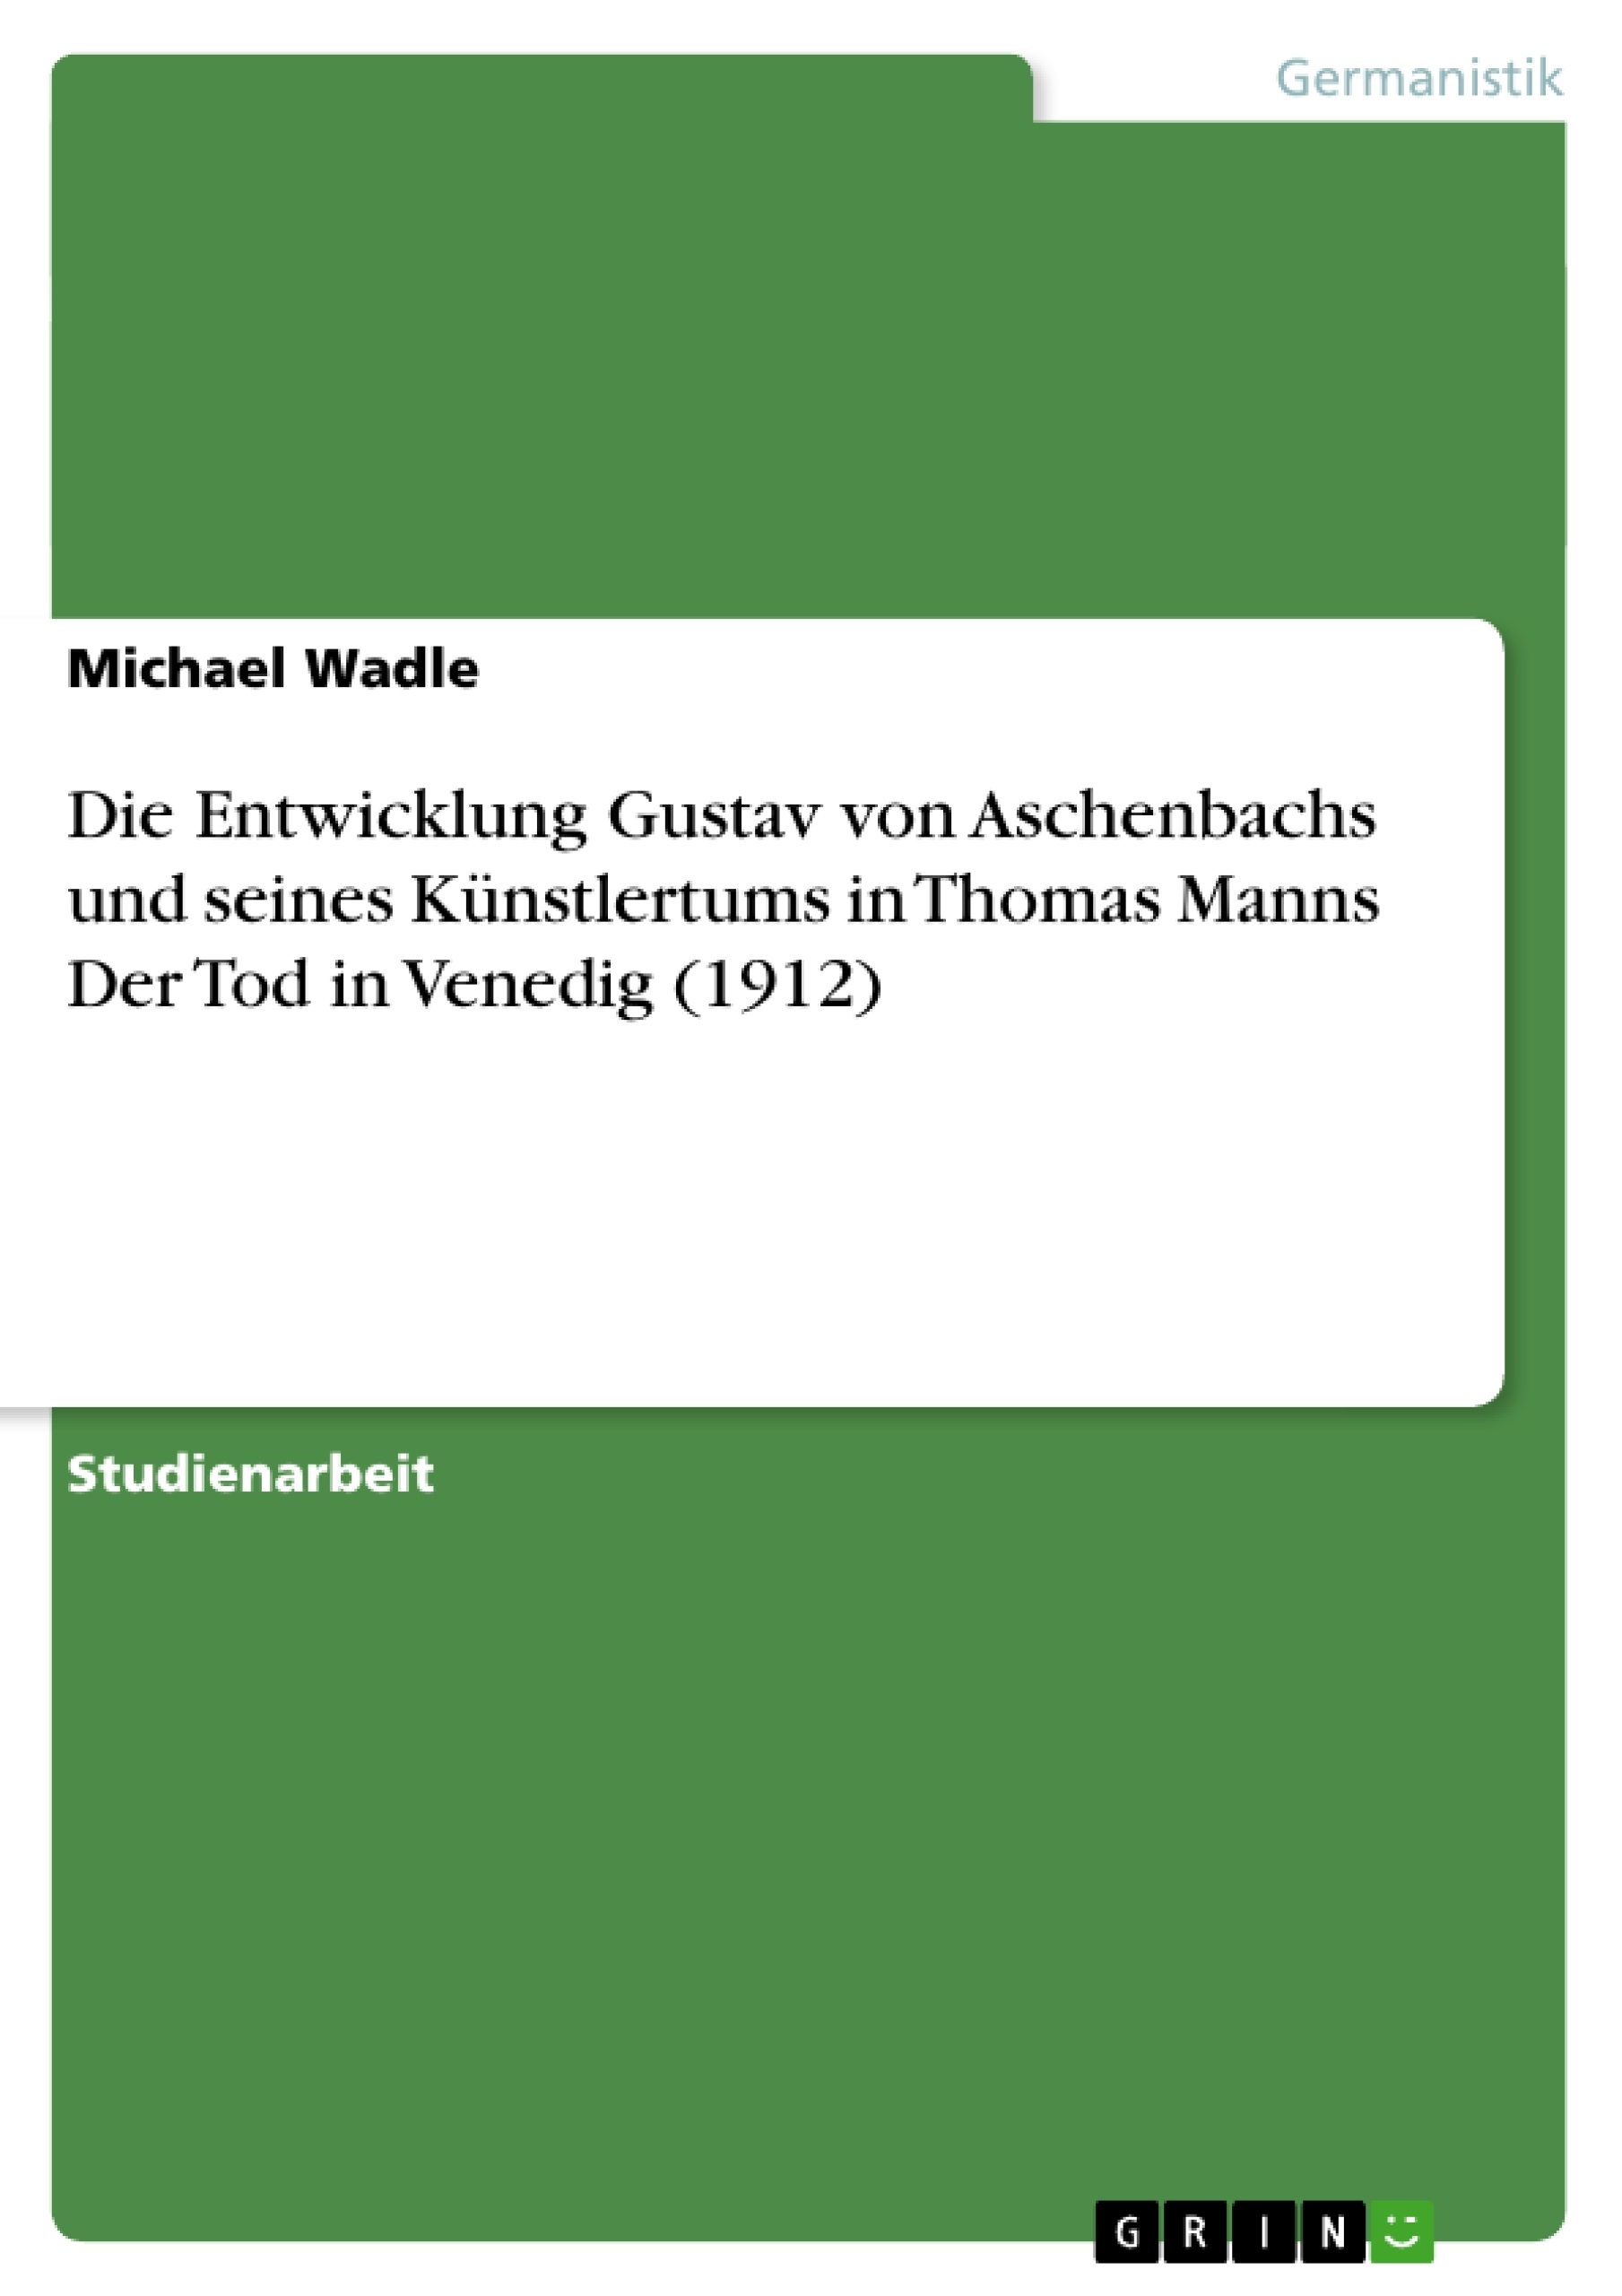 Titre: Die Entwicklung Gustav von Aschenbachs und seines Künstlertums in Thomas Manns Der Tod in Venedig (1912)